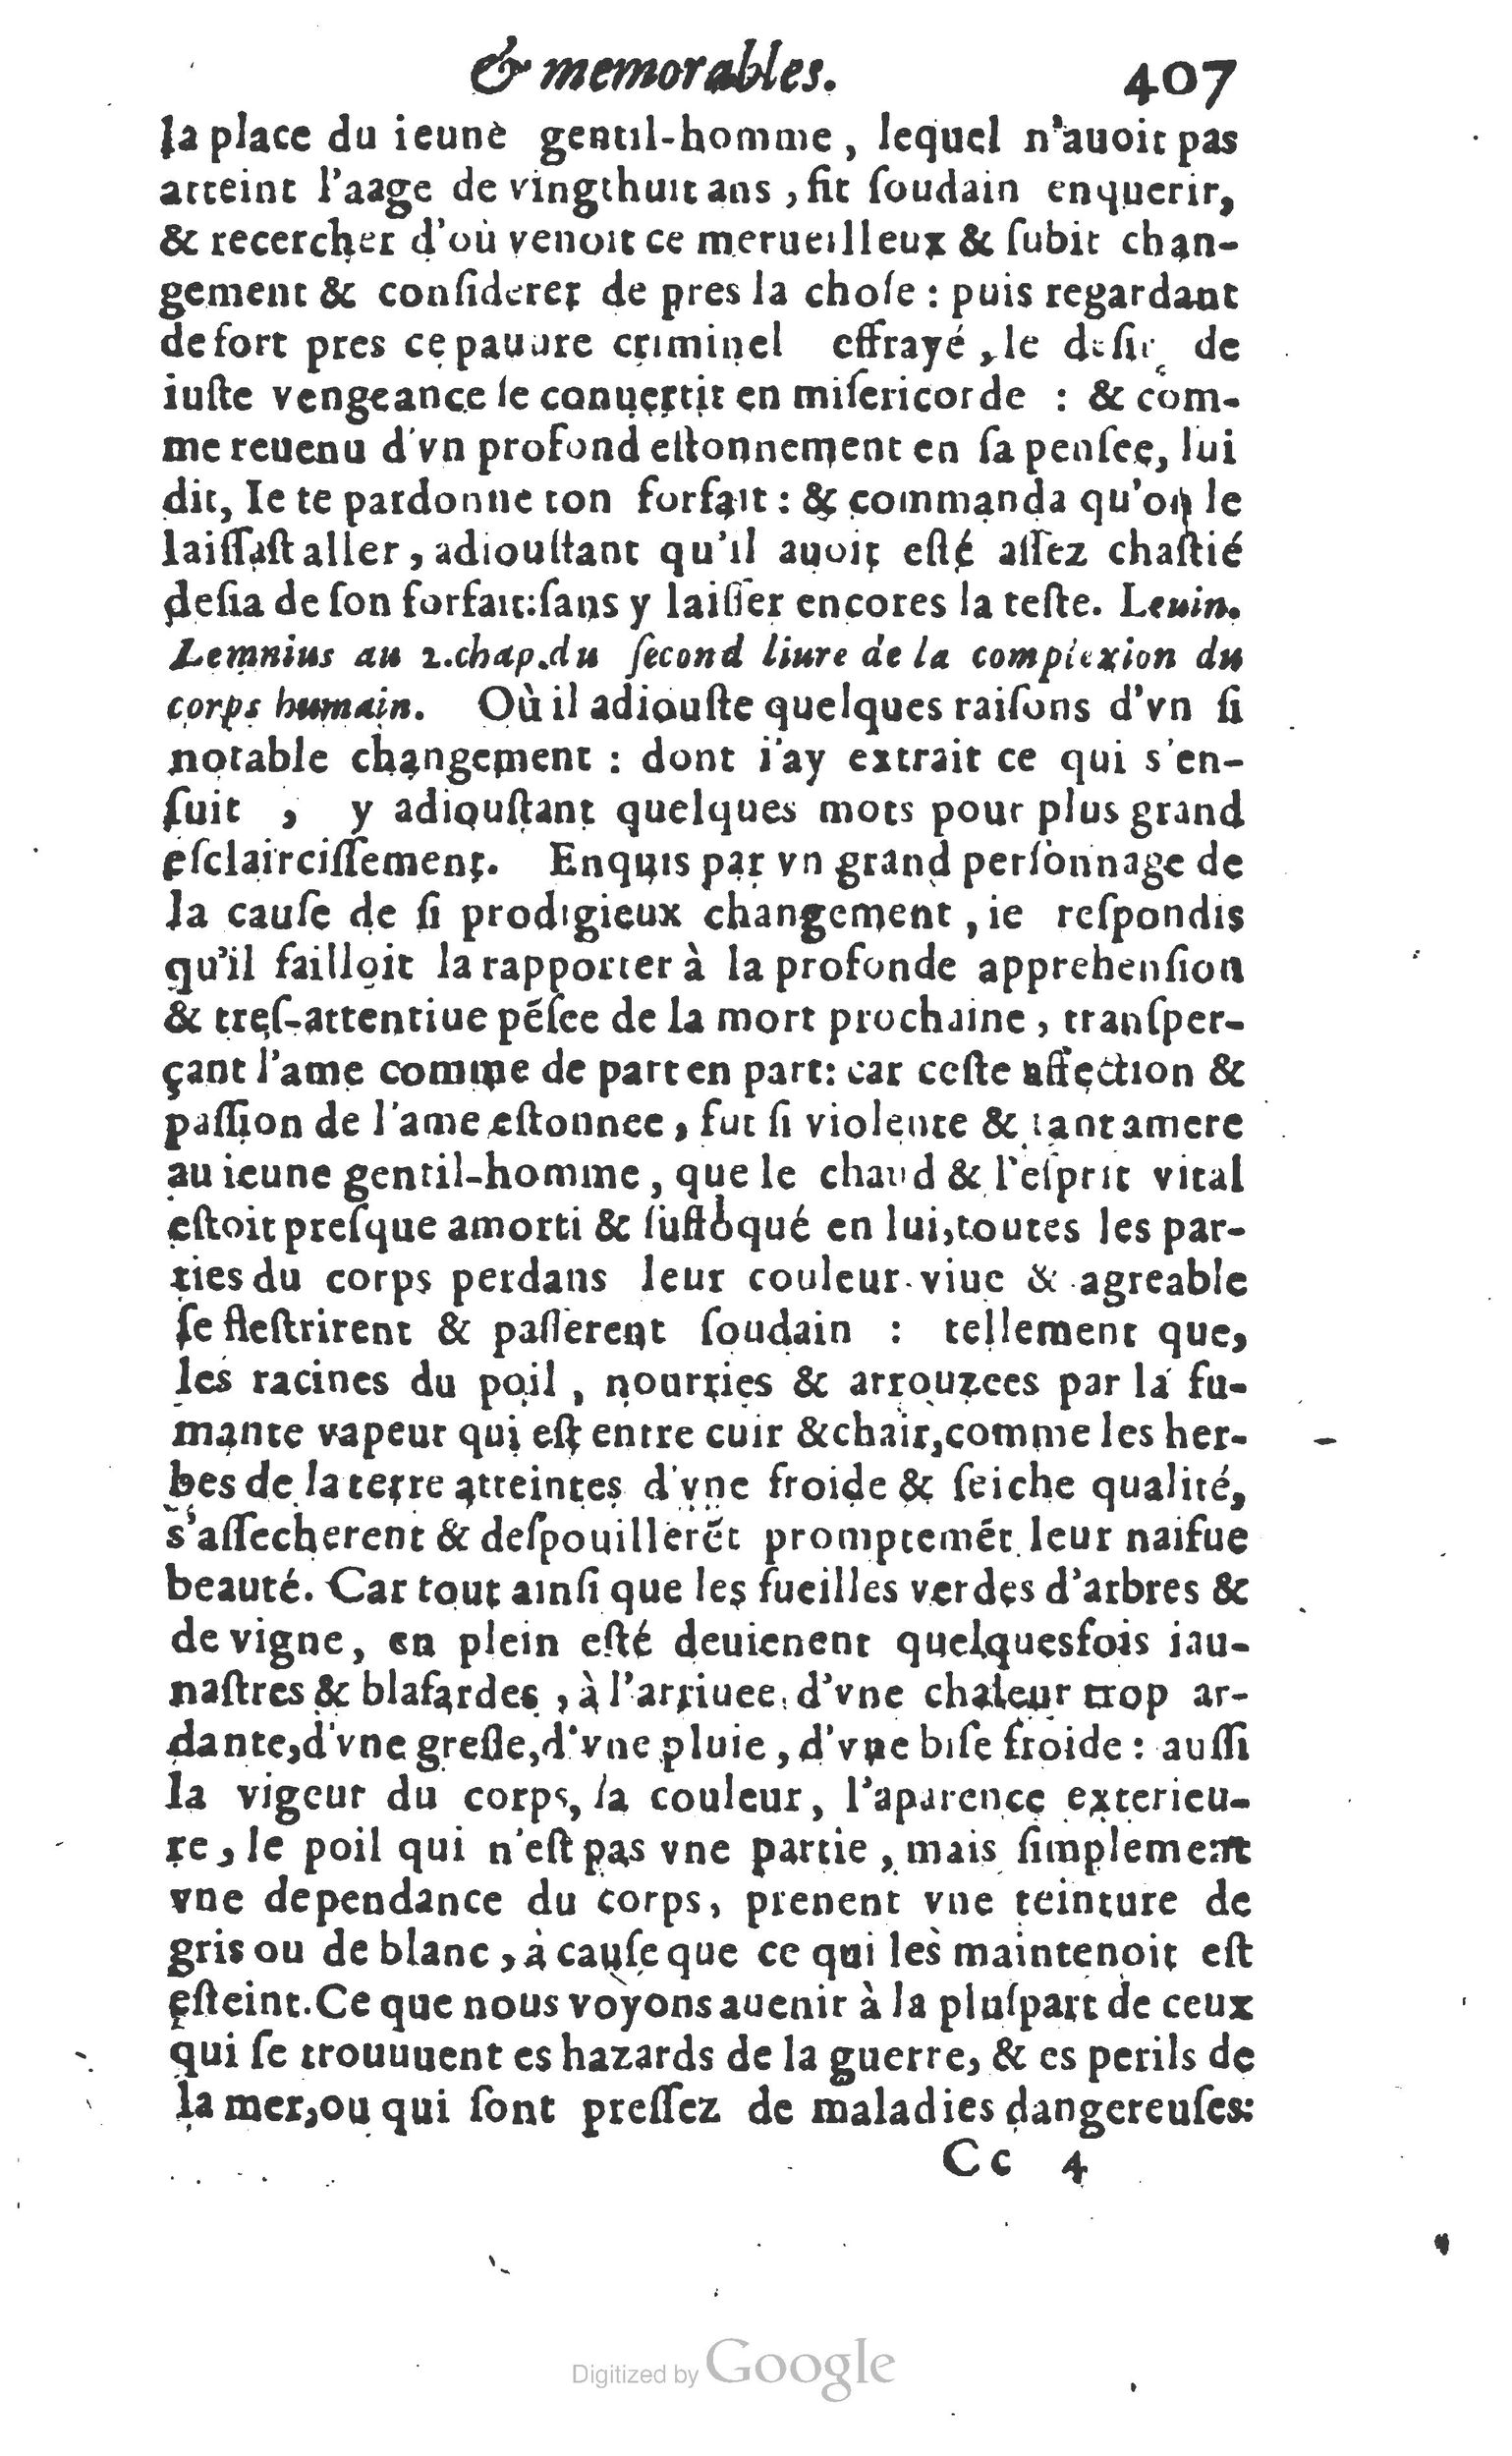 1610 Trésor d’histoires admirables et mémorables de nostre temps Marceau Princeton_Page_0428.jpg